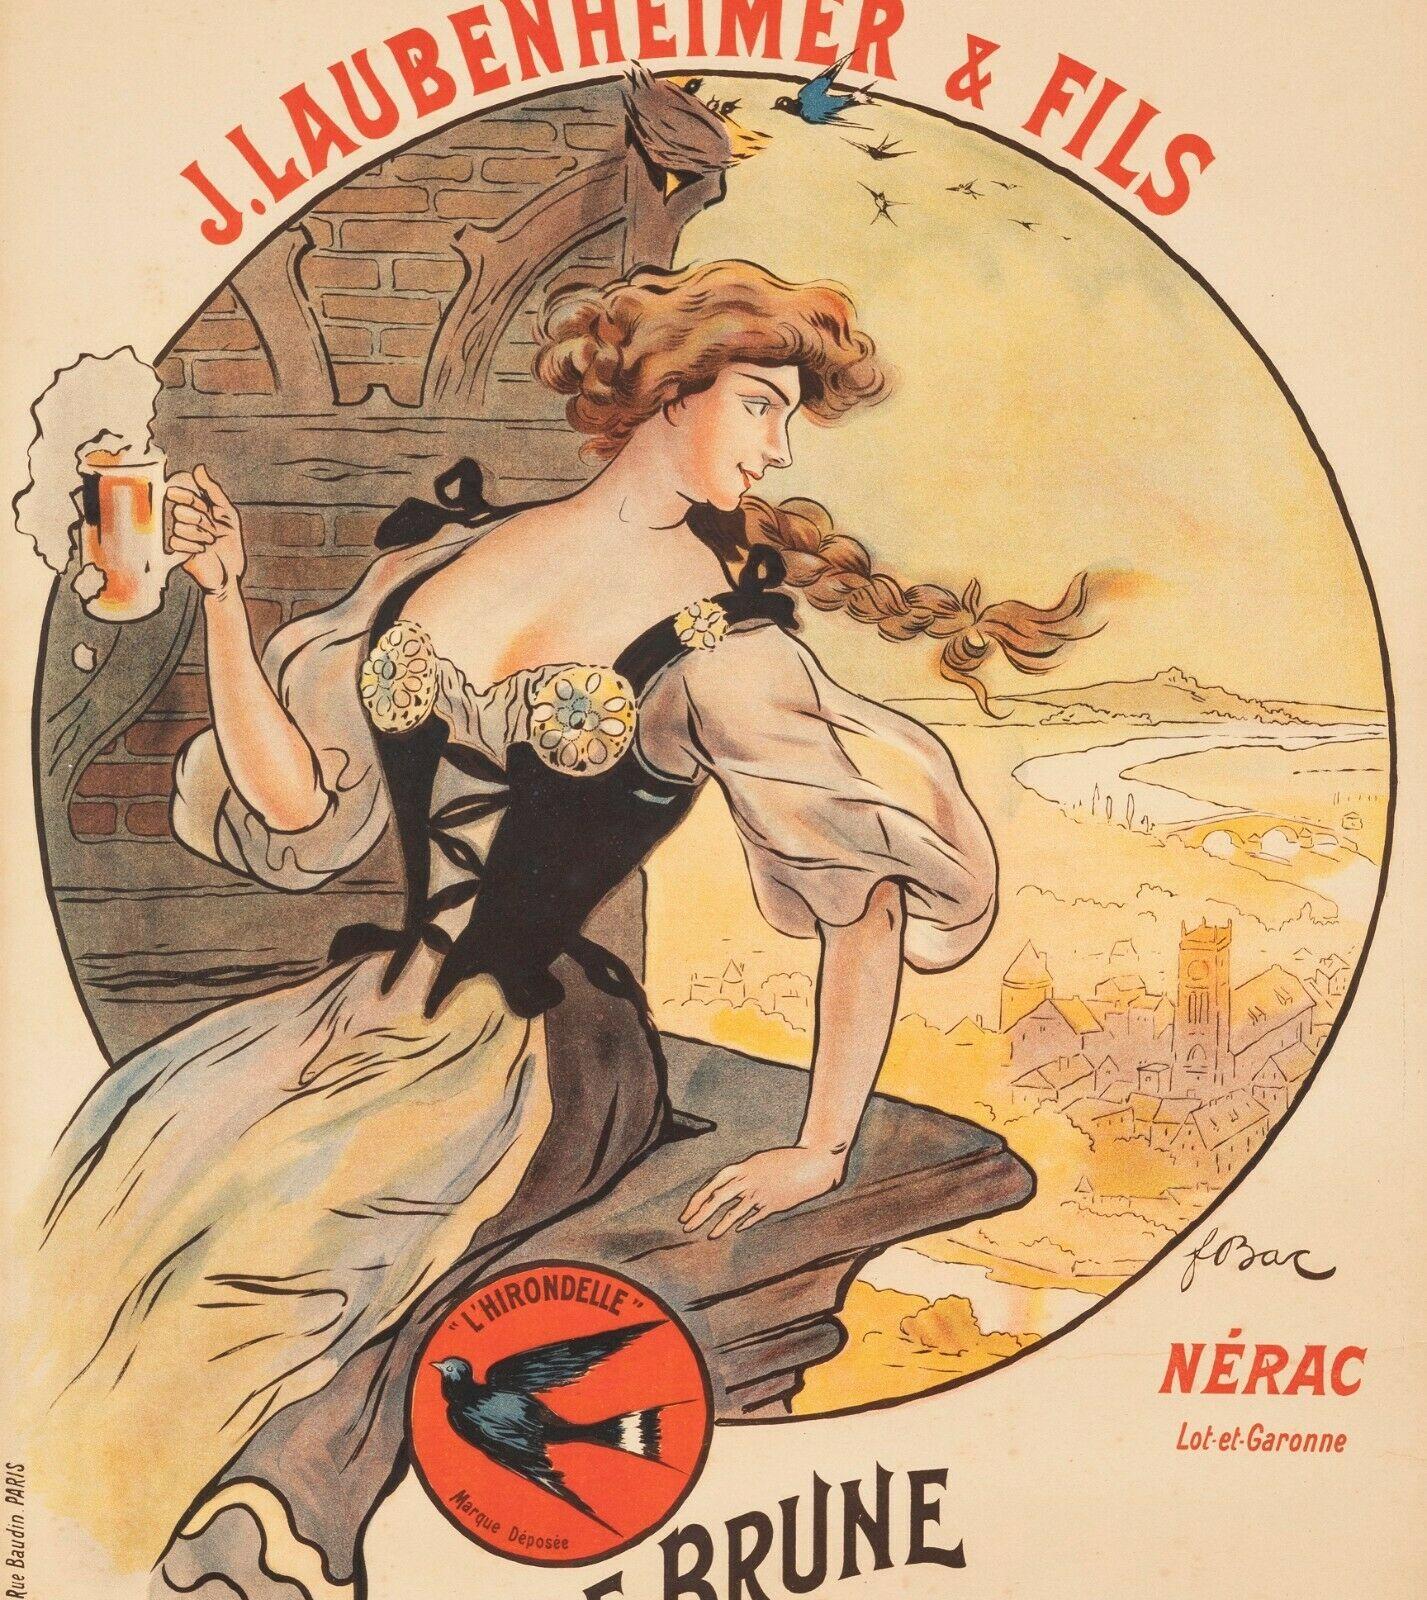 Original Vintage Poster-F. Bac-Laubenheimer Brasserie-Beer-Hirondelle, 1908

Affiche pour promouvoir les bières Laubenheimer dont la brasserie est située à Nérac (Lot et Garonne).

Détails supplémentaires :
Matériaux et techniques : Lithographie en